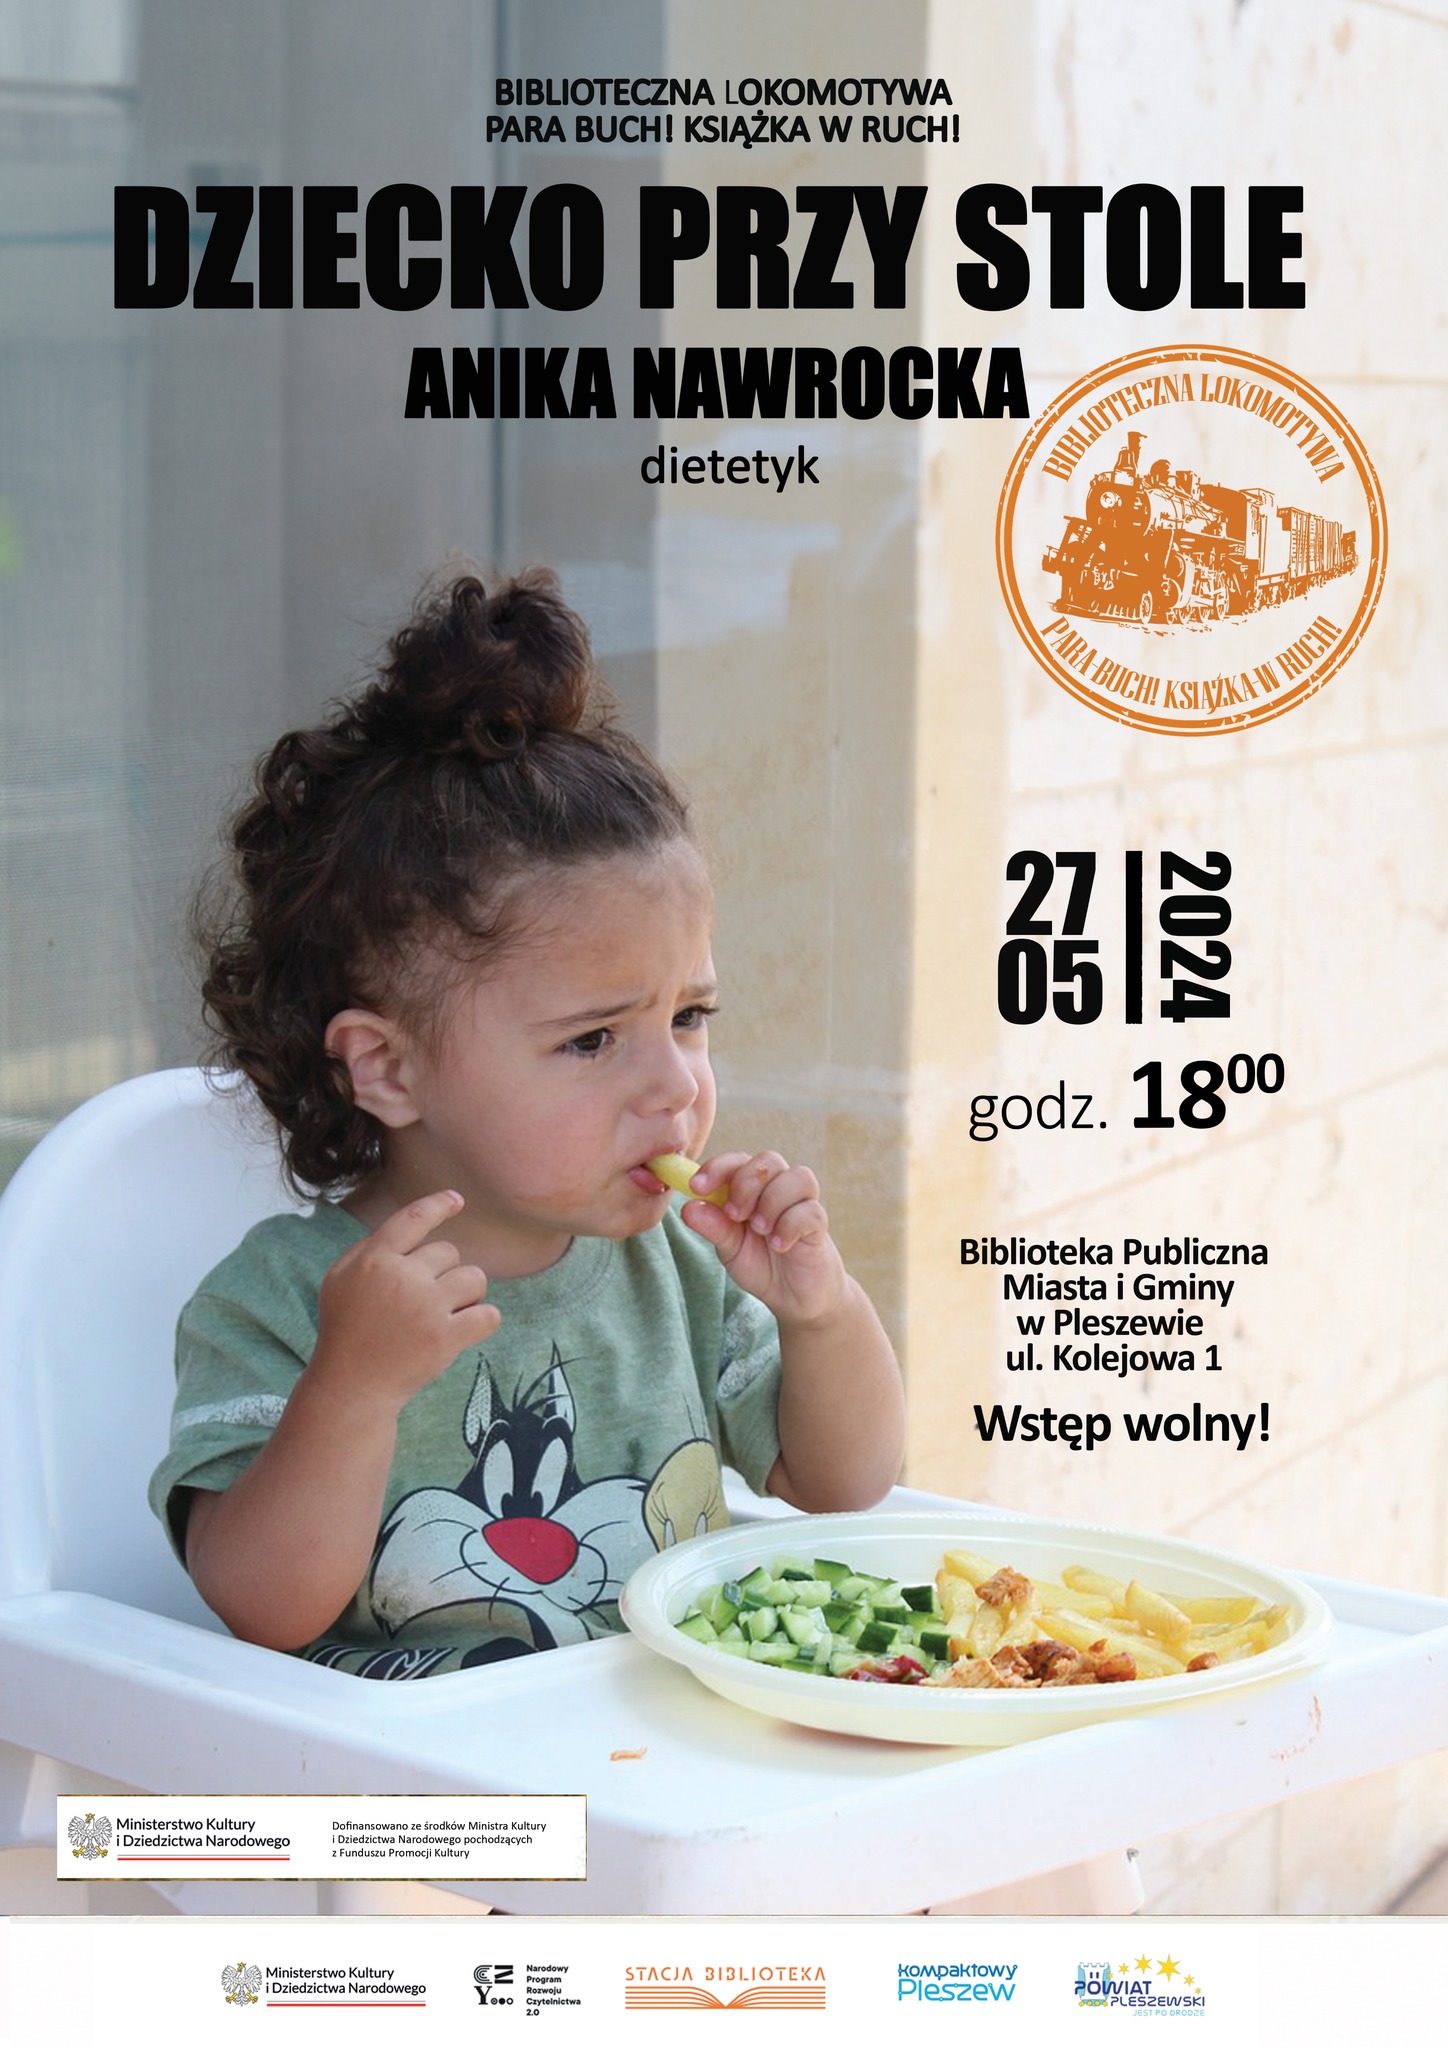 Plakat spotkania z dietetyk Aniką Nawrocką w bibliotece publicznej MiG Pleszew 27 maja 2024 r. o godzinie 18:00.